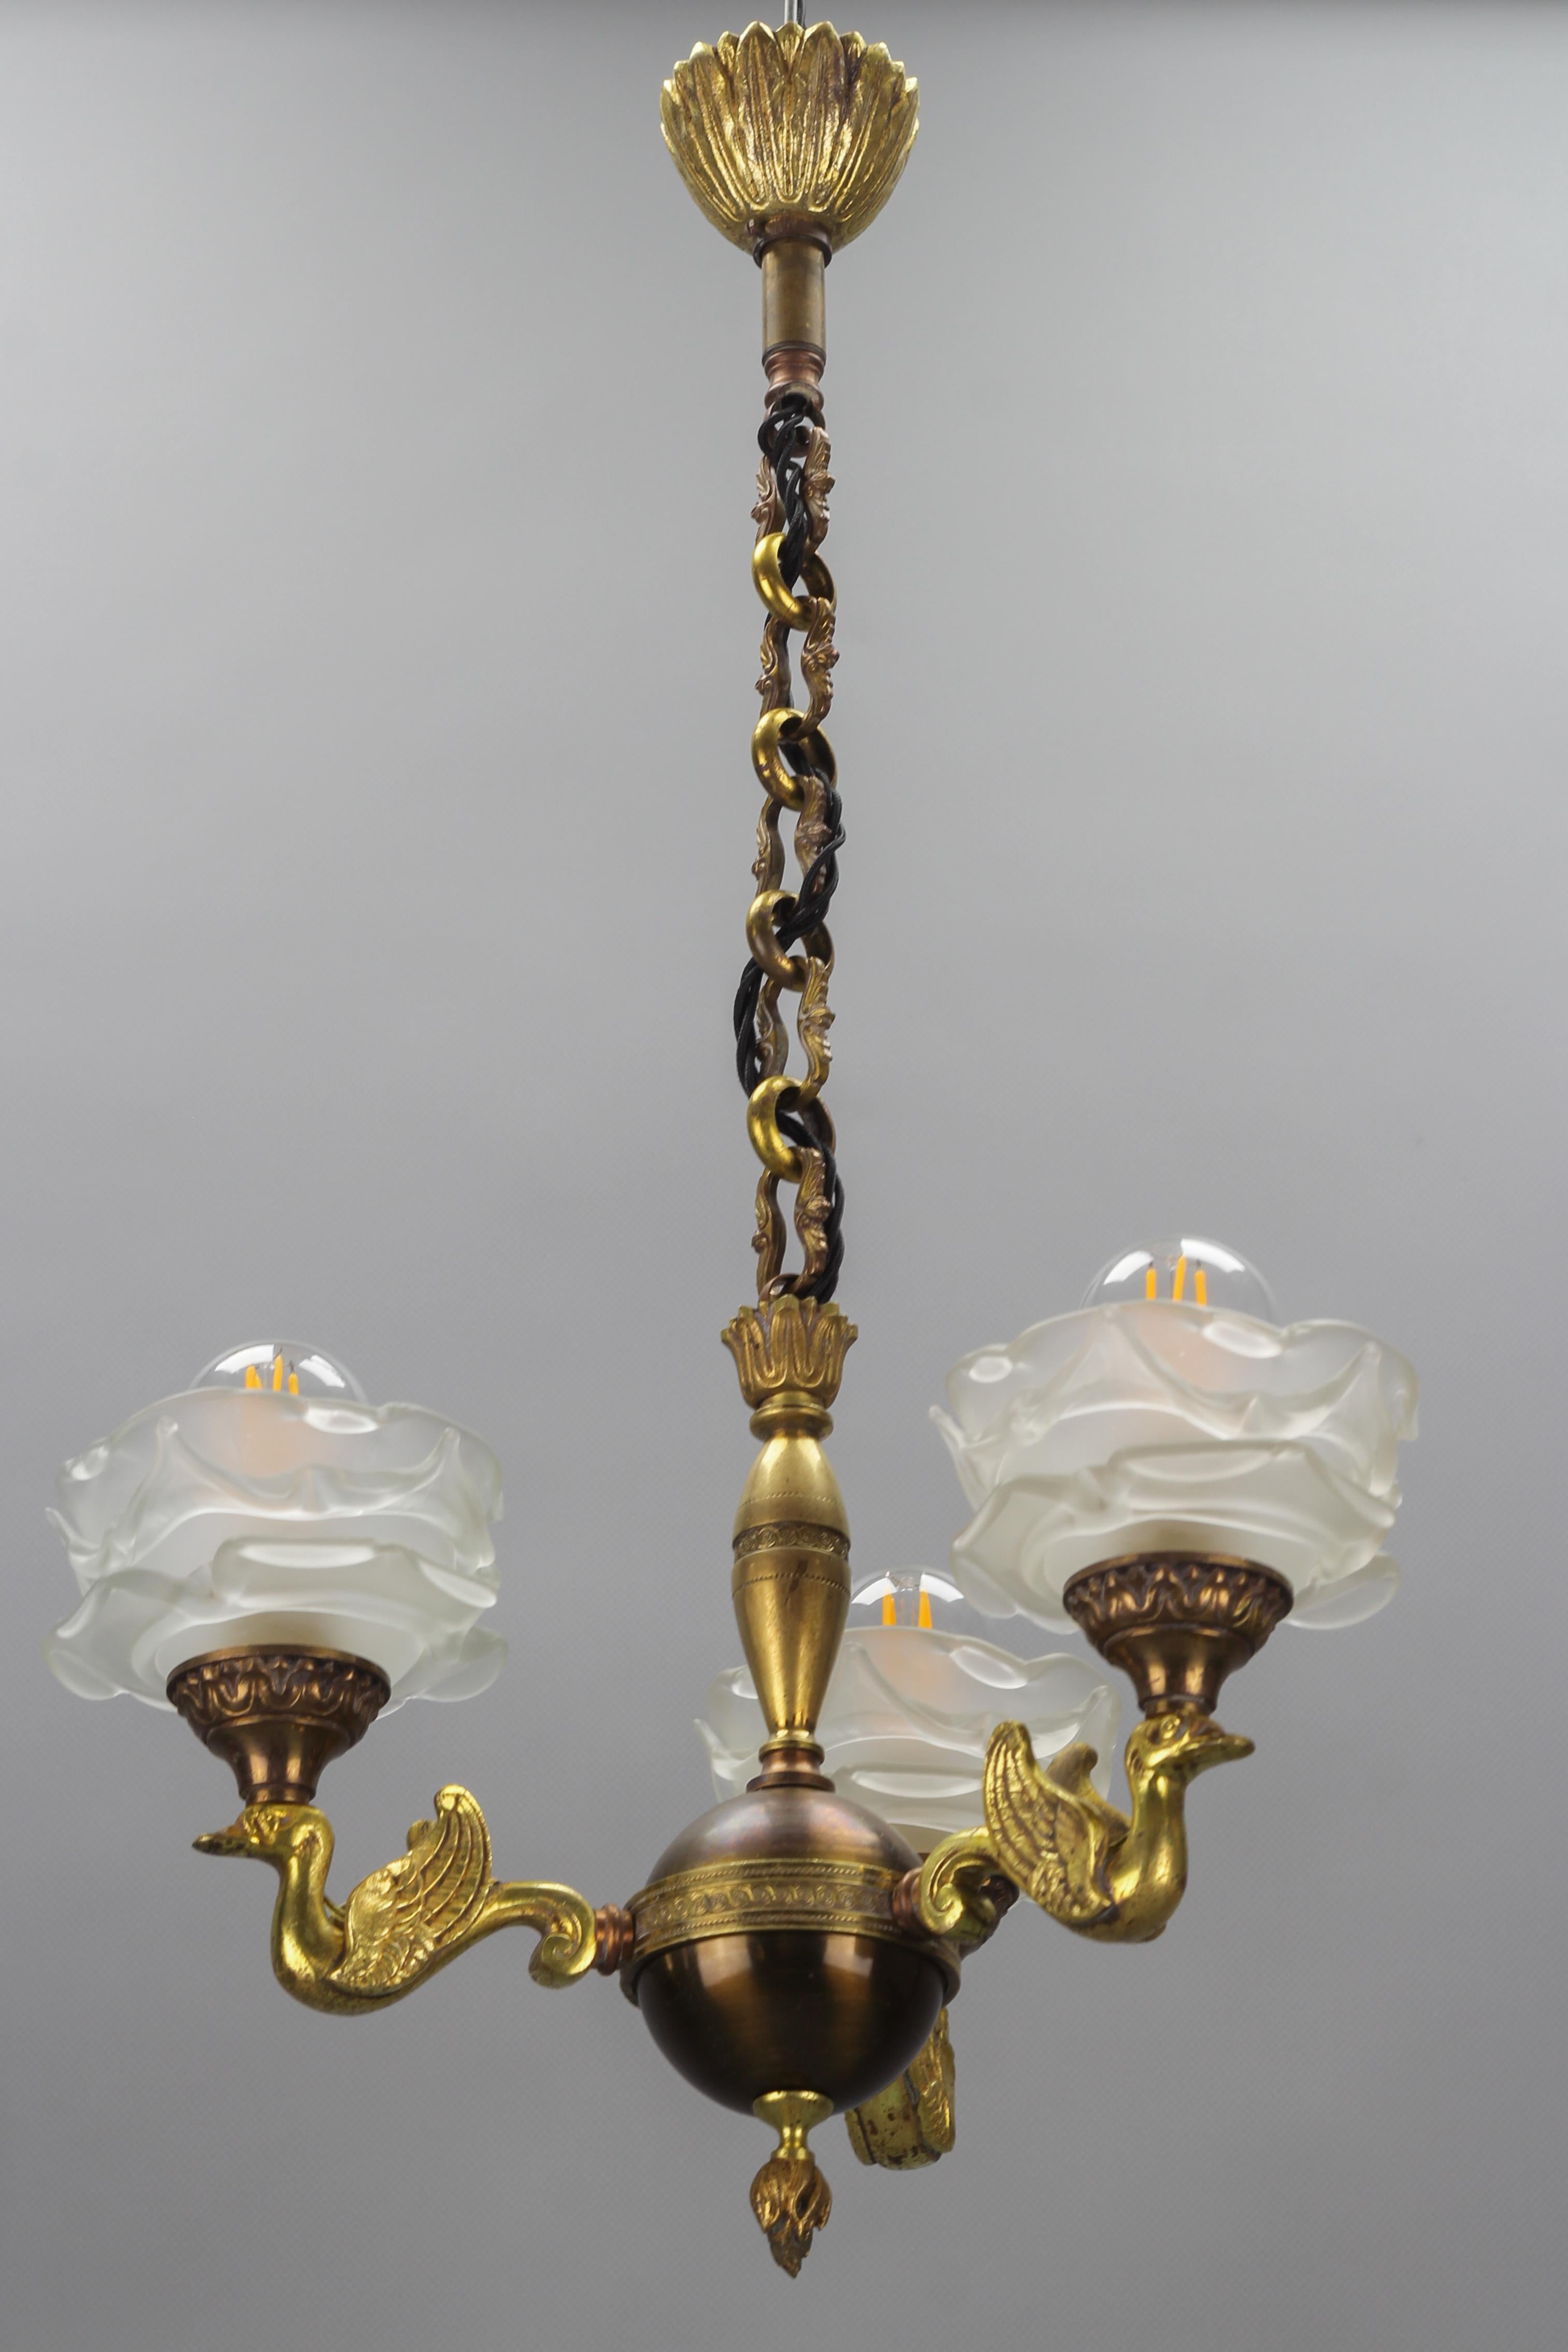 Dreiflammiger Kronleuchter im französischen Empire-Stil aus Messing, Bronze und Milchglas, ca. 1950er Jahre.
Dieser bezaubernde und kompakte Kronleuchter im Empire-Stil hat einen runden Messingkörper und drei Arme - drei bronzene Schwäne, die